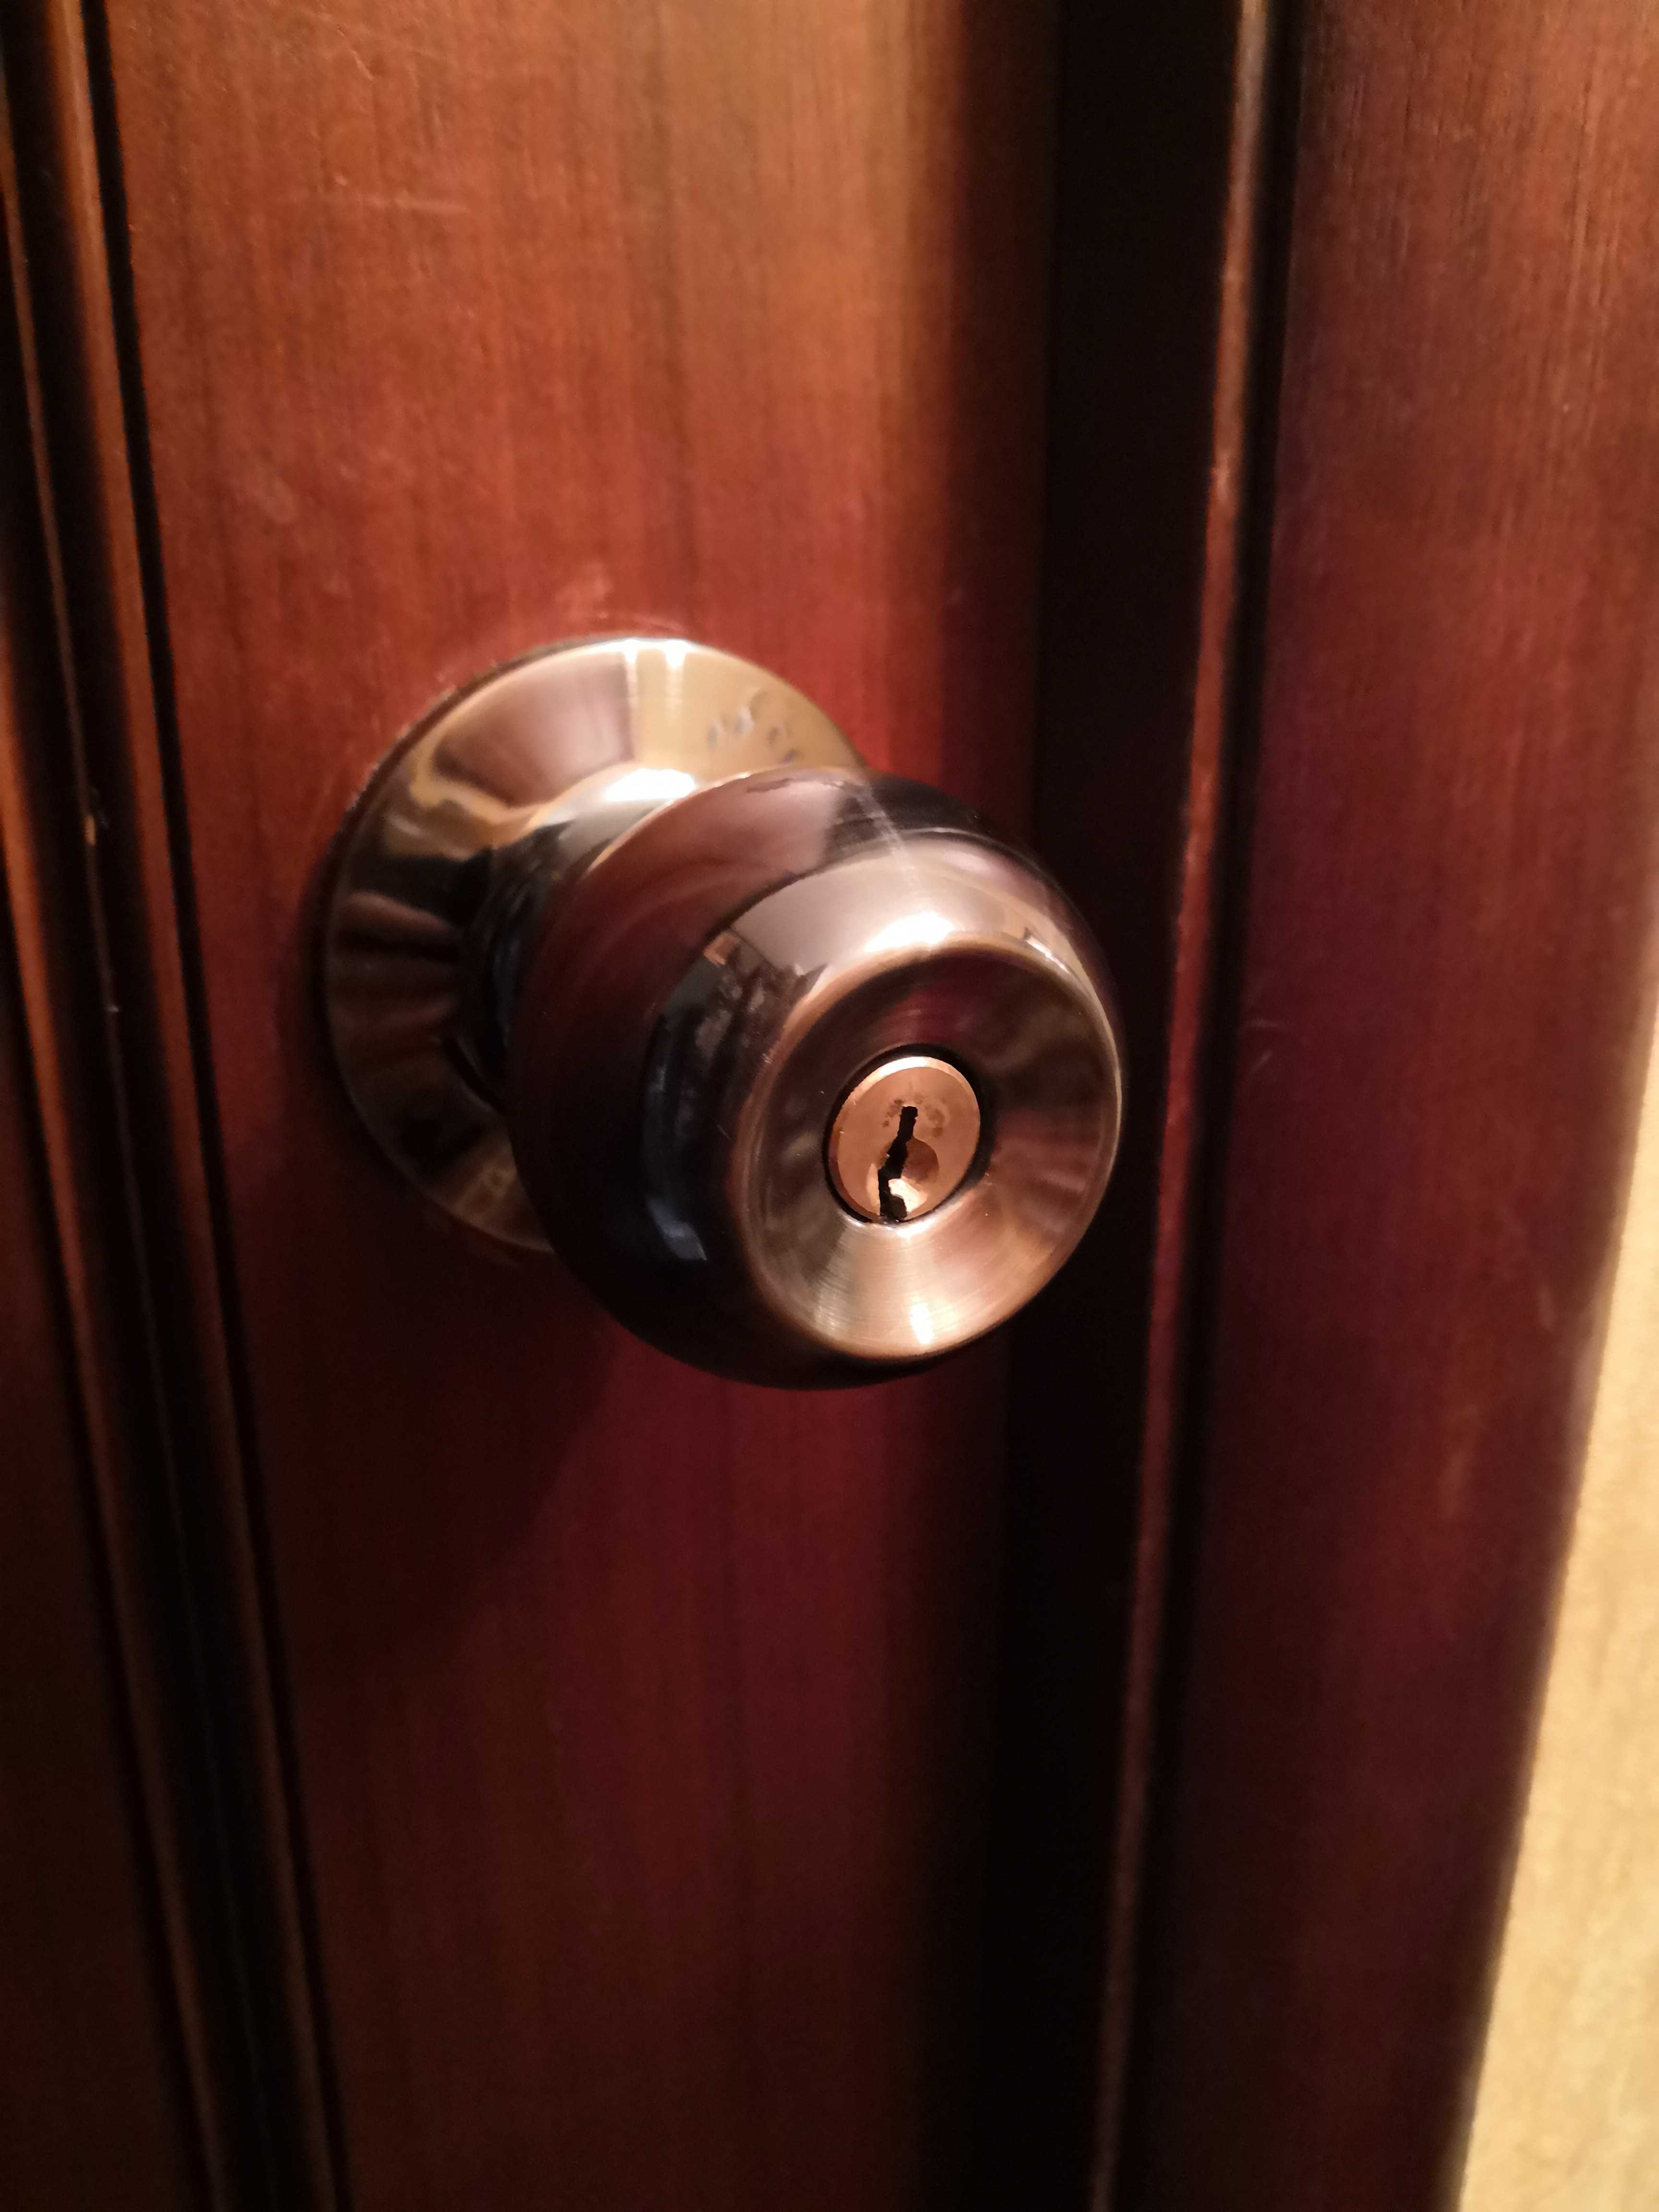 Как быстро открыть замок межкомнатной двери без ключа, если она захлопнулась